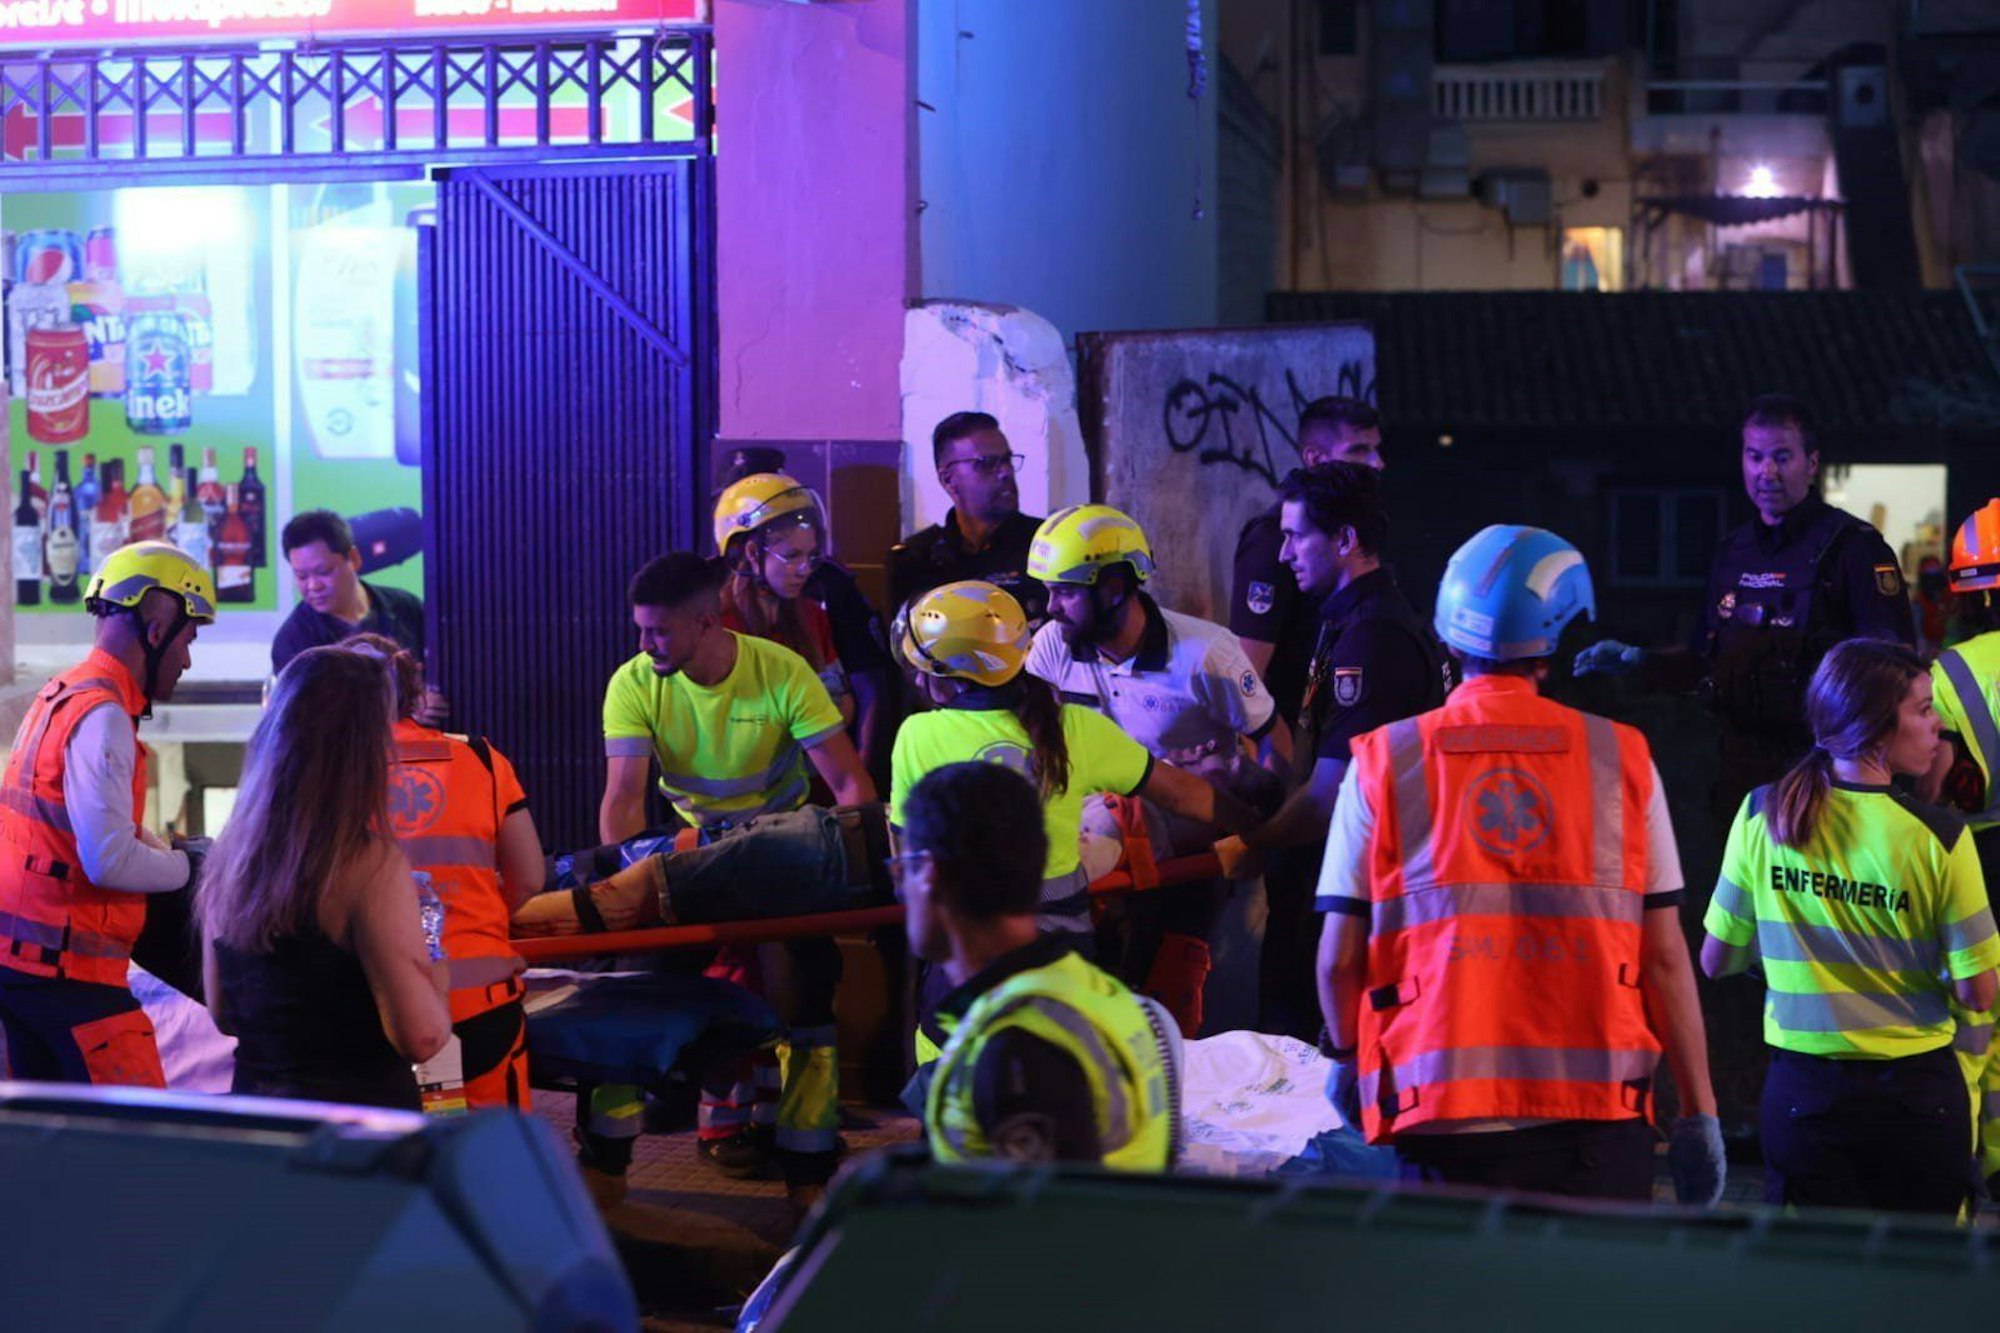 Rettungsdienste sind nach dem Einsturz eines Gebäudes am Strand von Palma im Einsatz. Mindestens zwei Menschen sollen am Donnerstag beim Einsturz ums Leben gekommen sein.